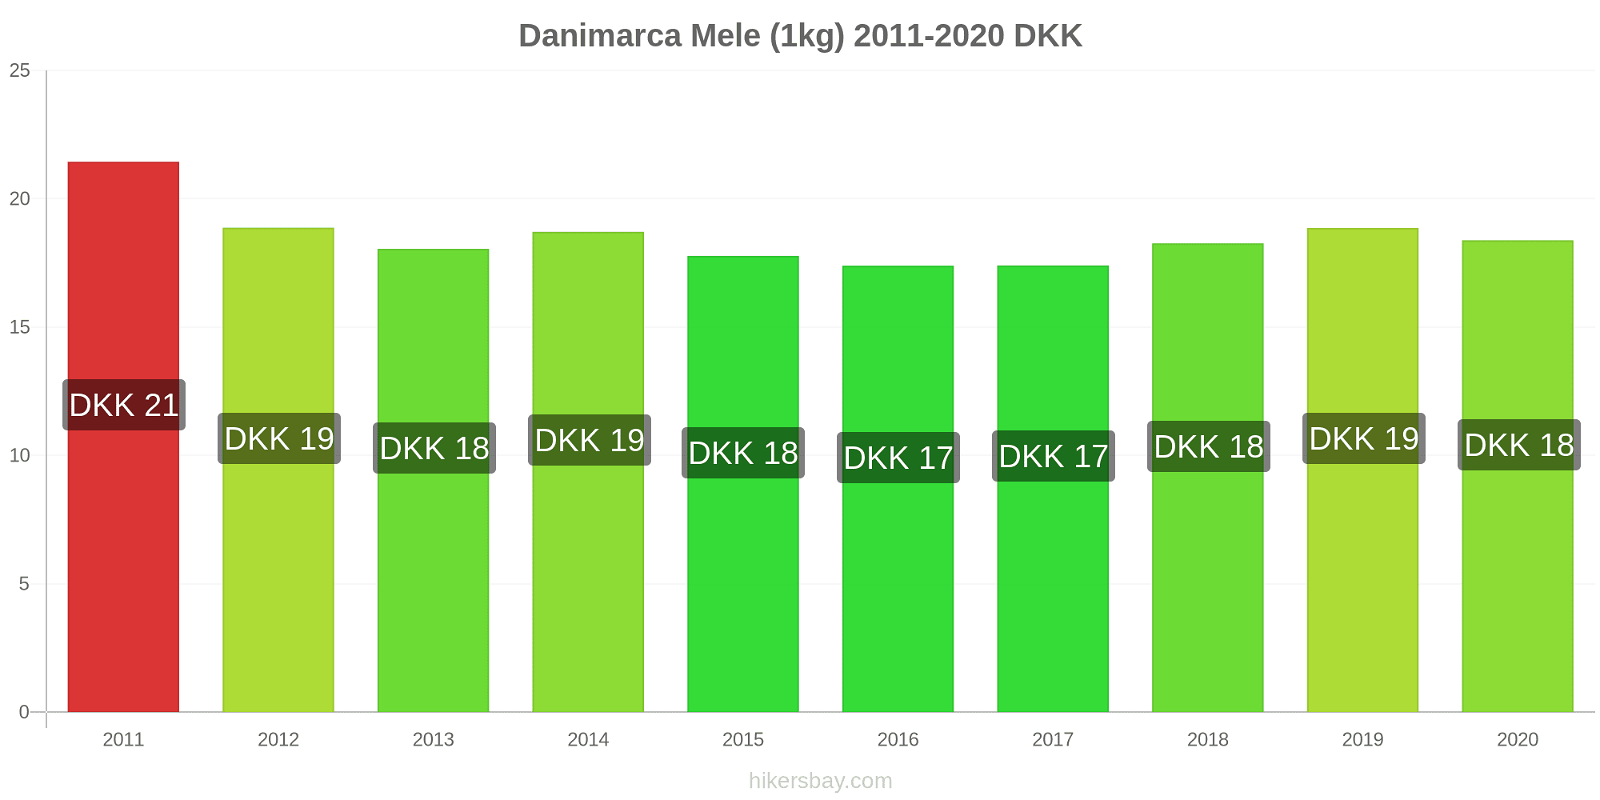 Danimarca variazioni di prezzo Mele (1kg) hikersbay.com